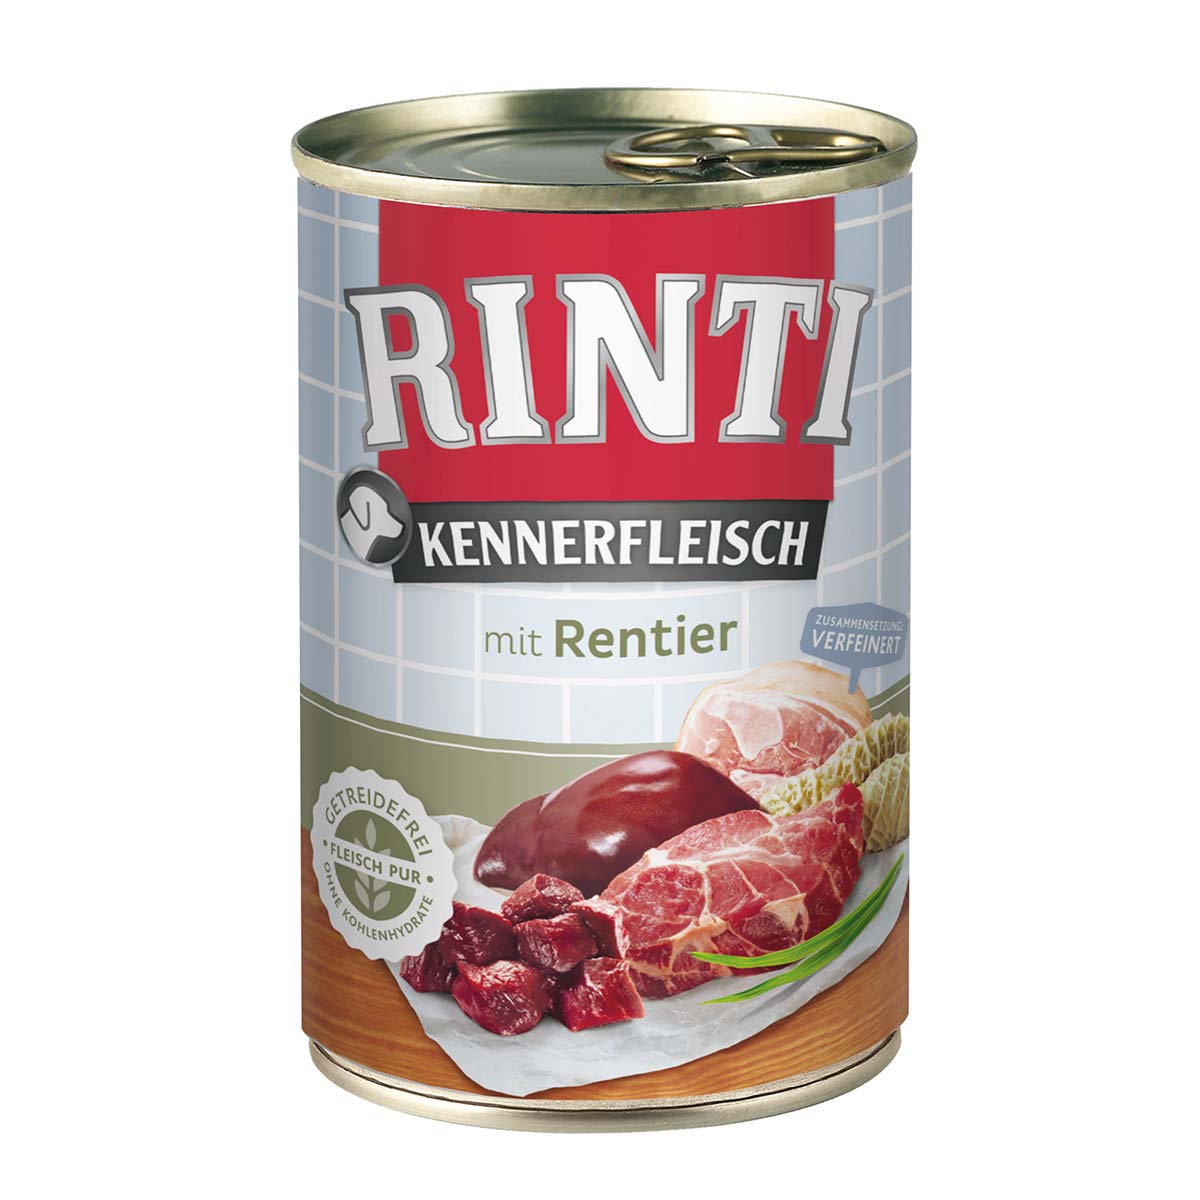 Rinti Kennerfleisch mit Rentier 24x400g